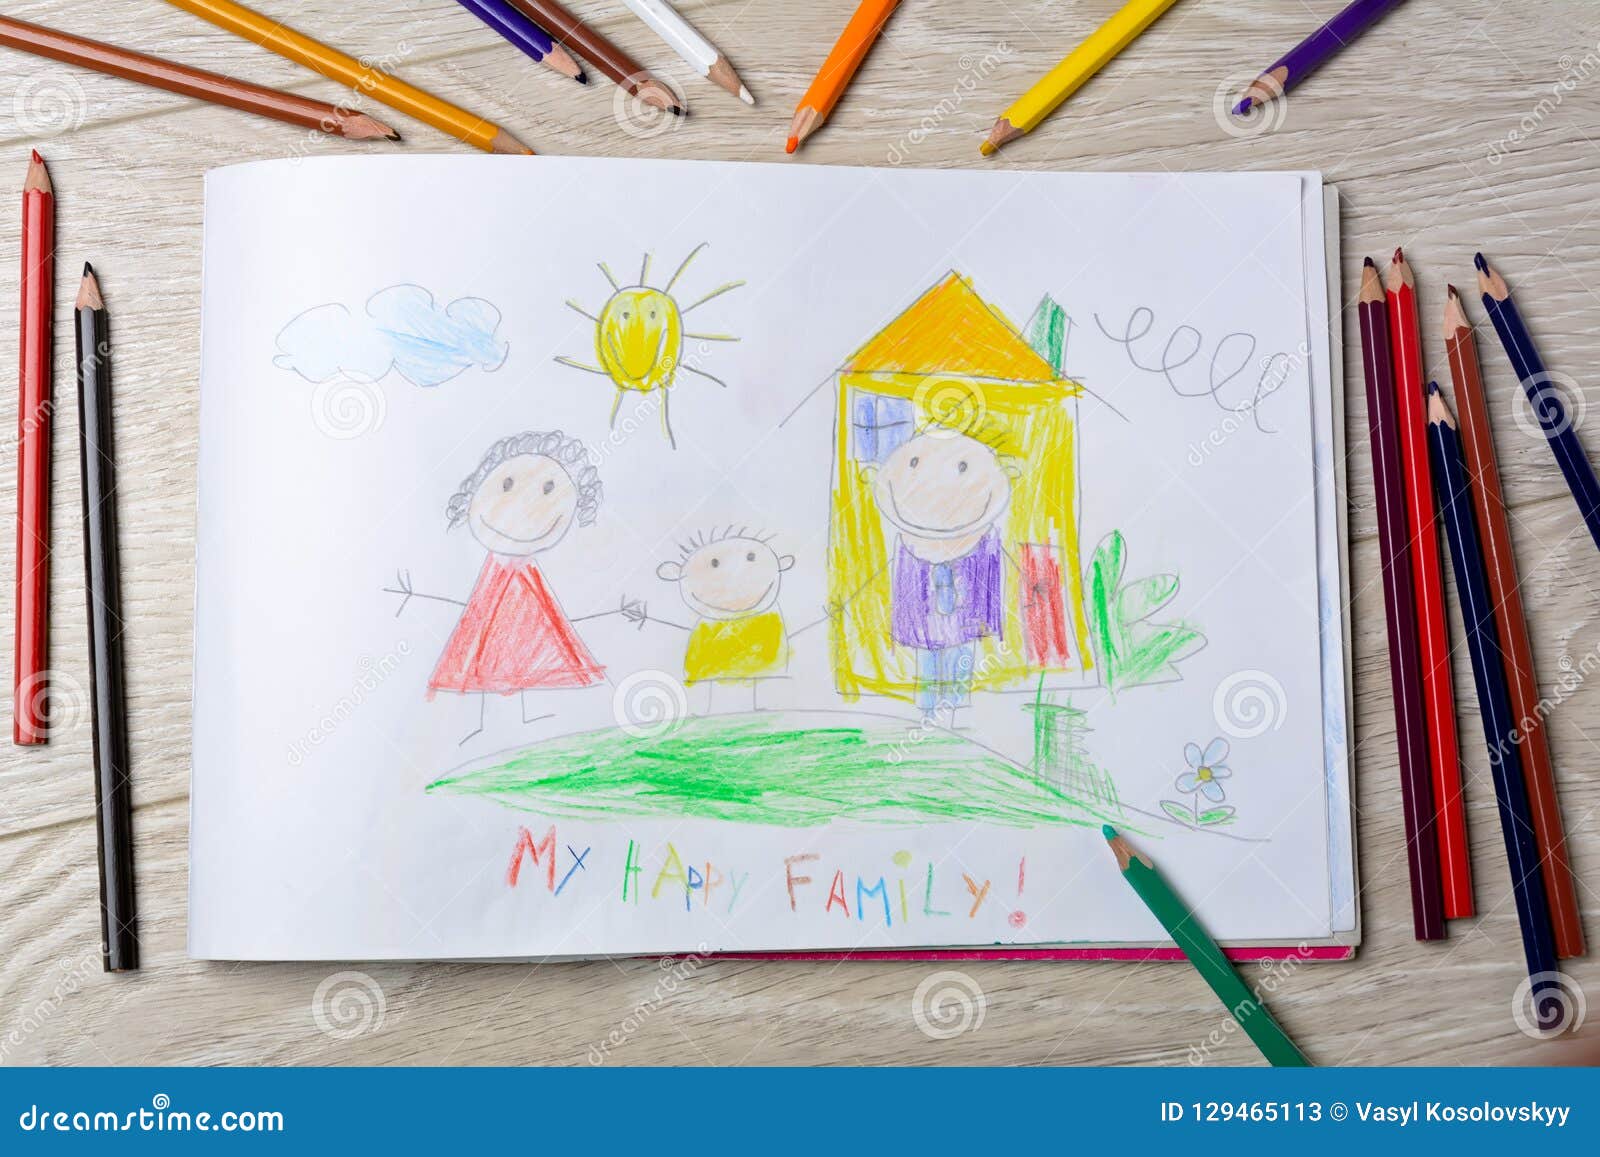 El Dibujo Del ` S De Los Niños Es Mi Familia Feliz Concepto De Creatividad  Del ` S De Los Niños Imagen de archivo - Imagen de sensaciones, muchacho:  129465113